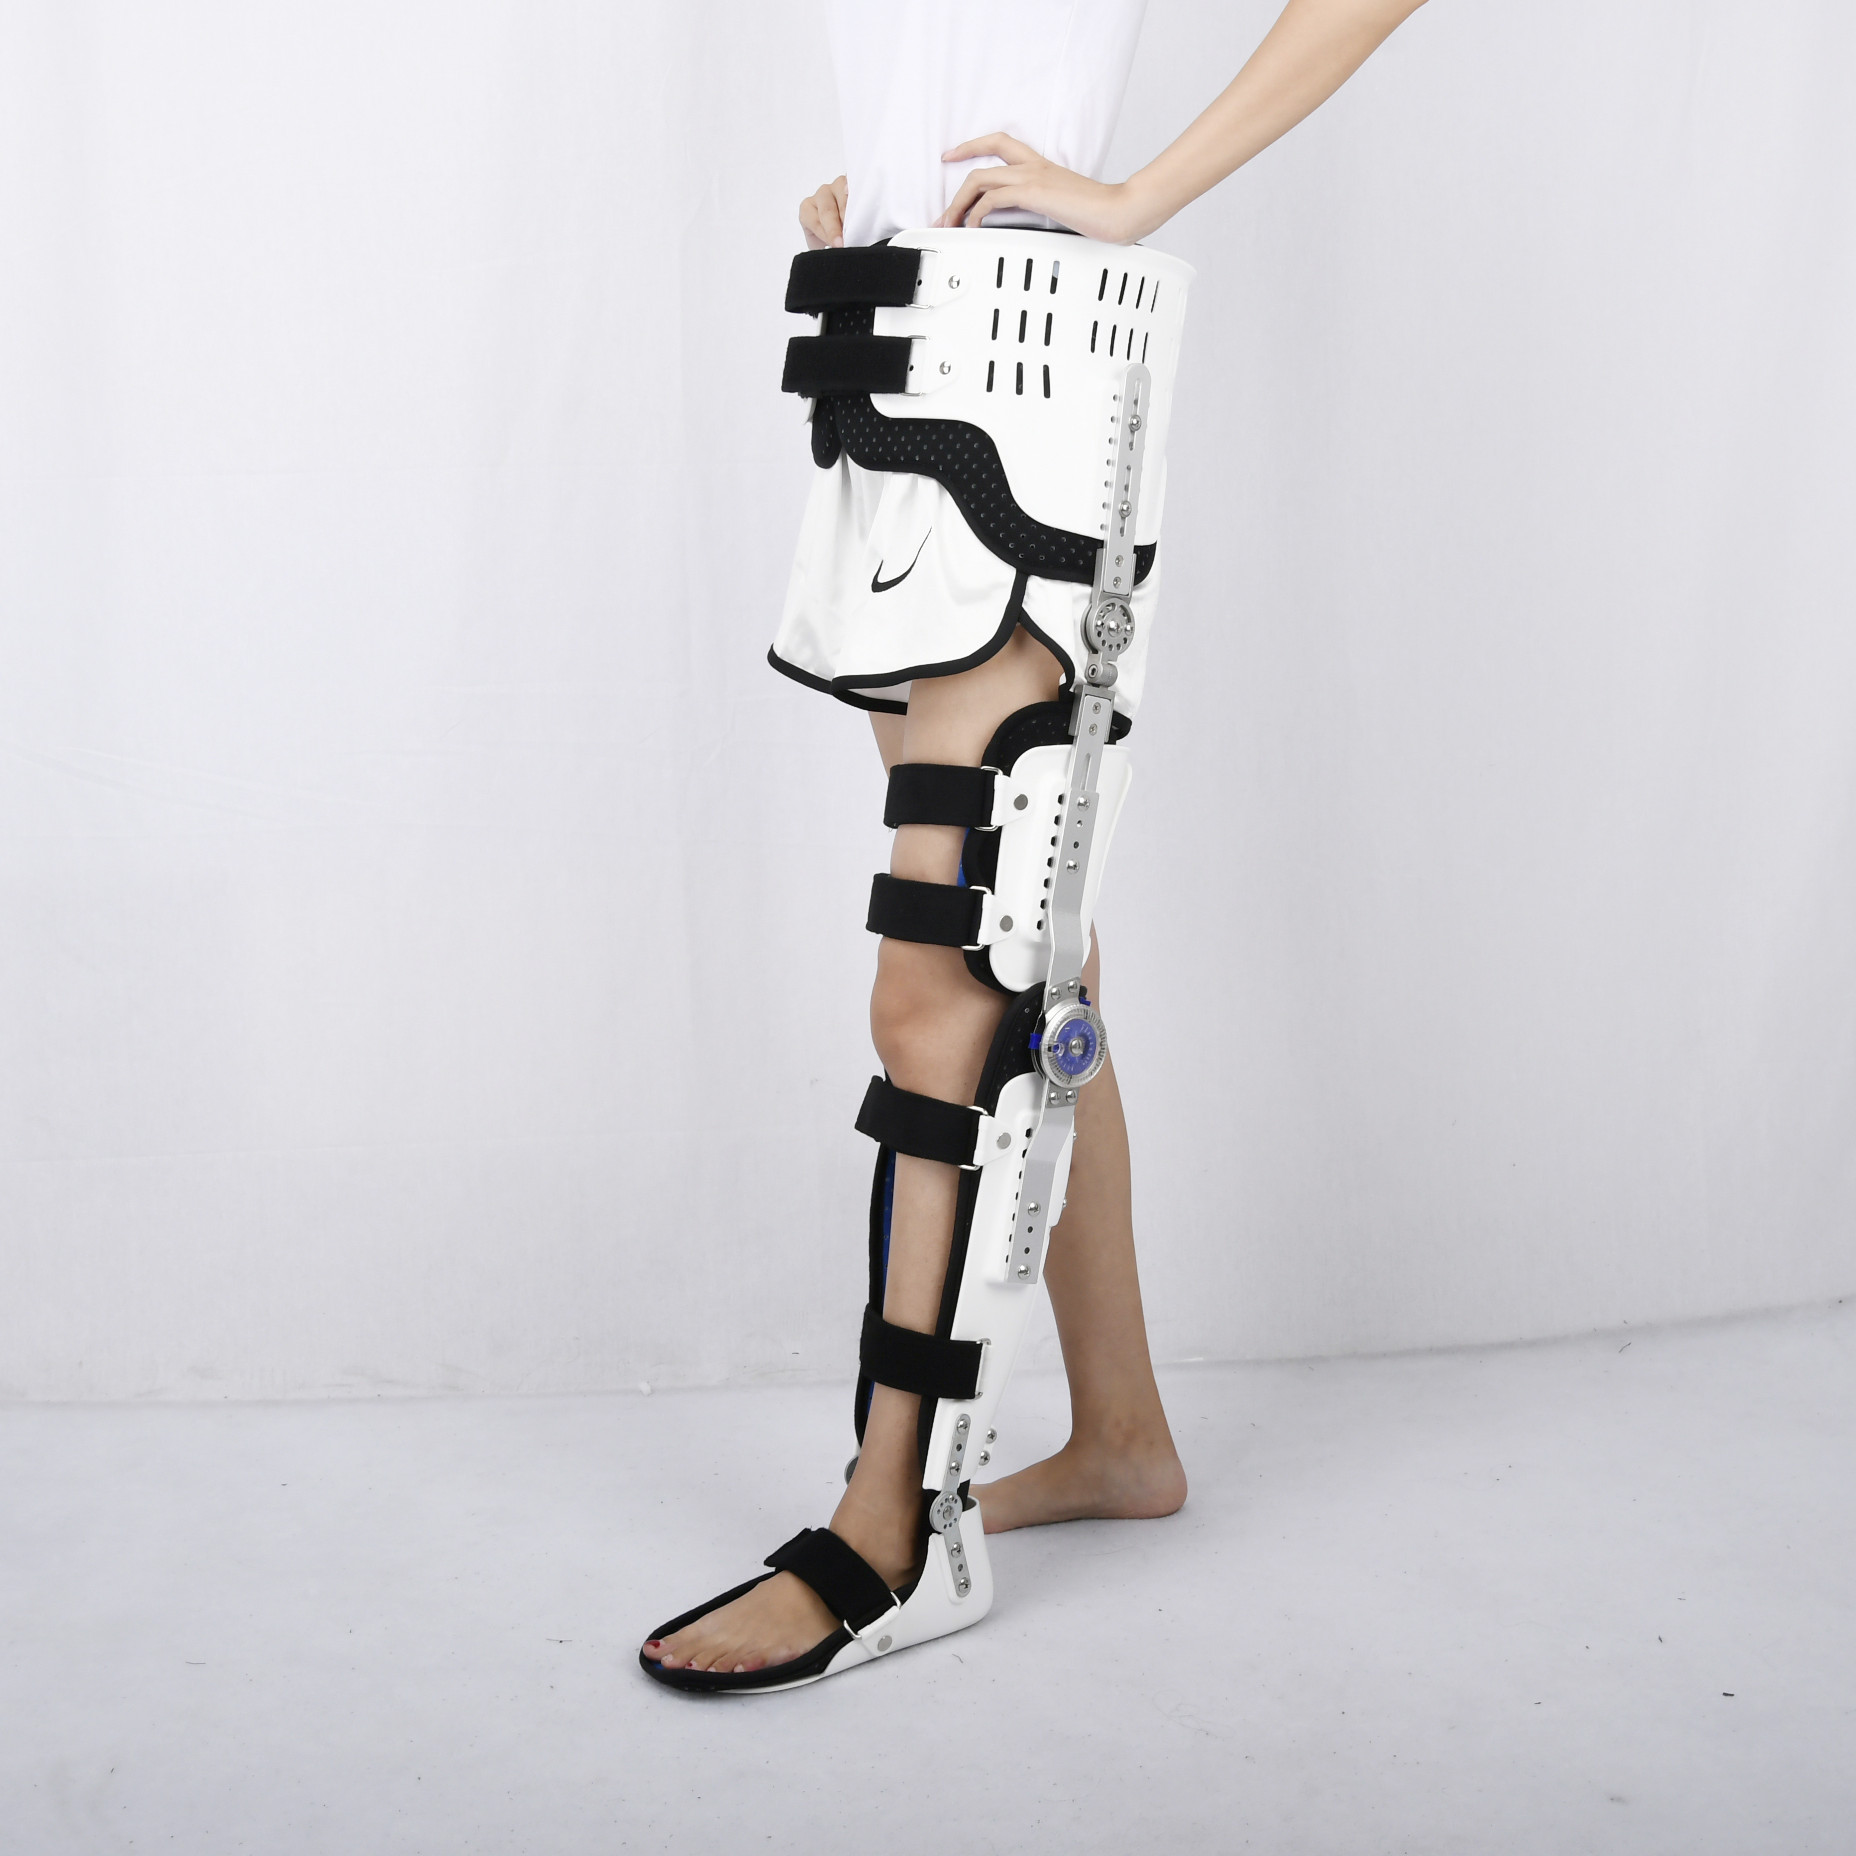 康奇医疗厂家髋关节截瘫行走固定支具股骨骨折护具胯部术后可调髋膝踝足护具5